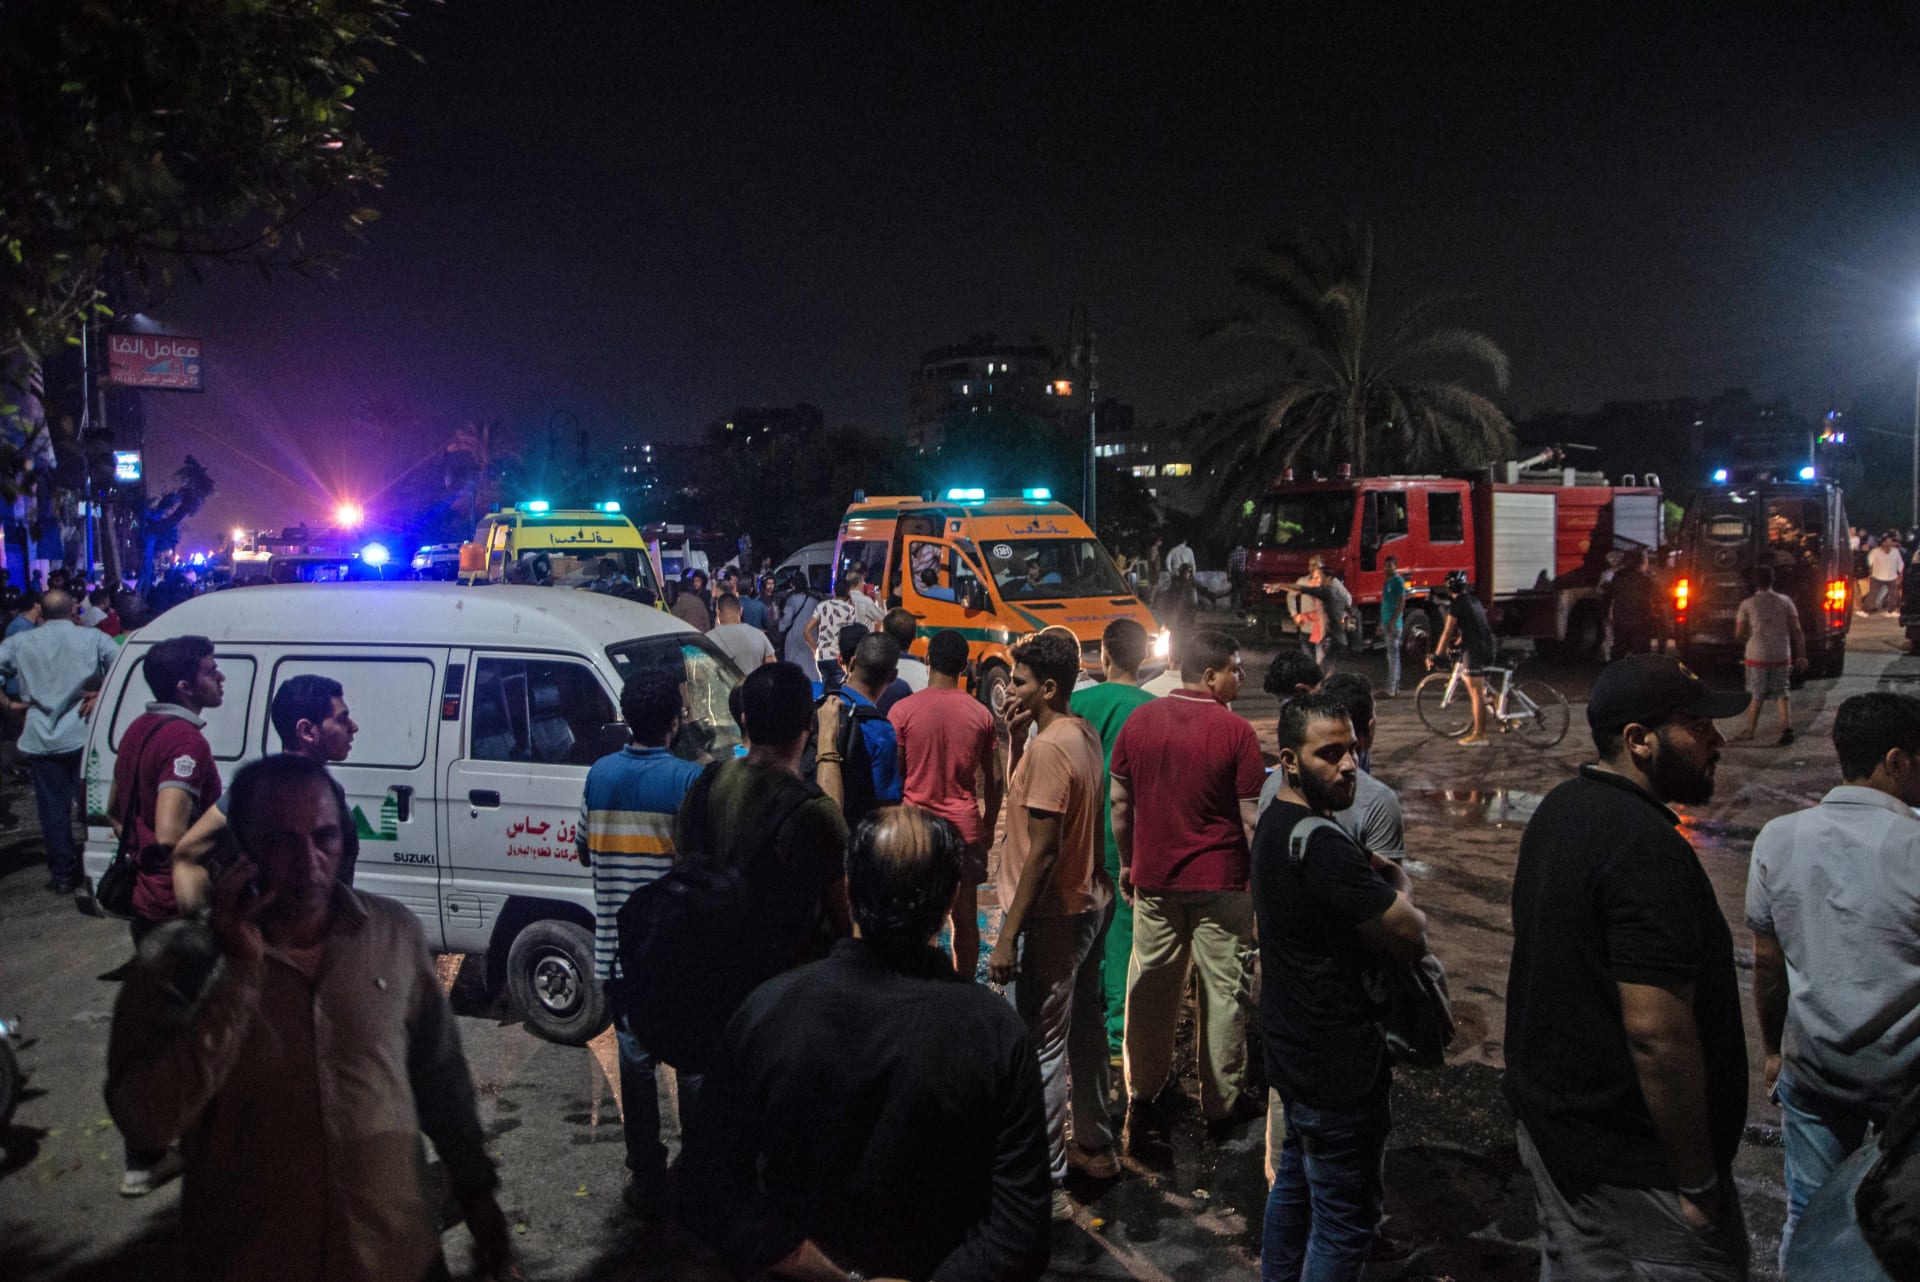 بالصور.. آثار تفجير "معهد الأورام" المتسبب في مقتل 20 شخصا في مصر